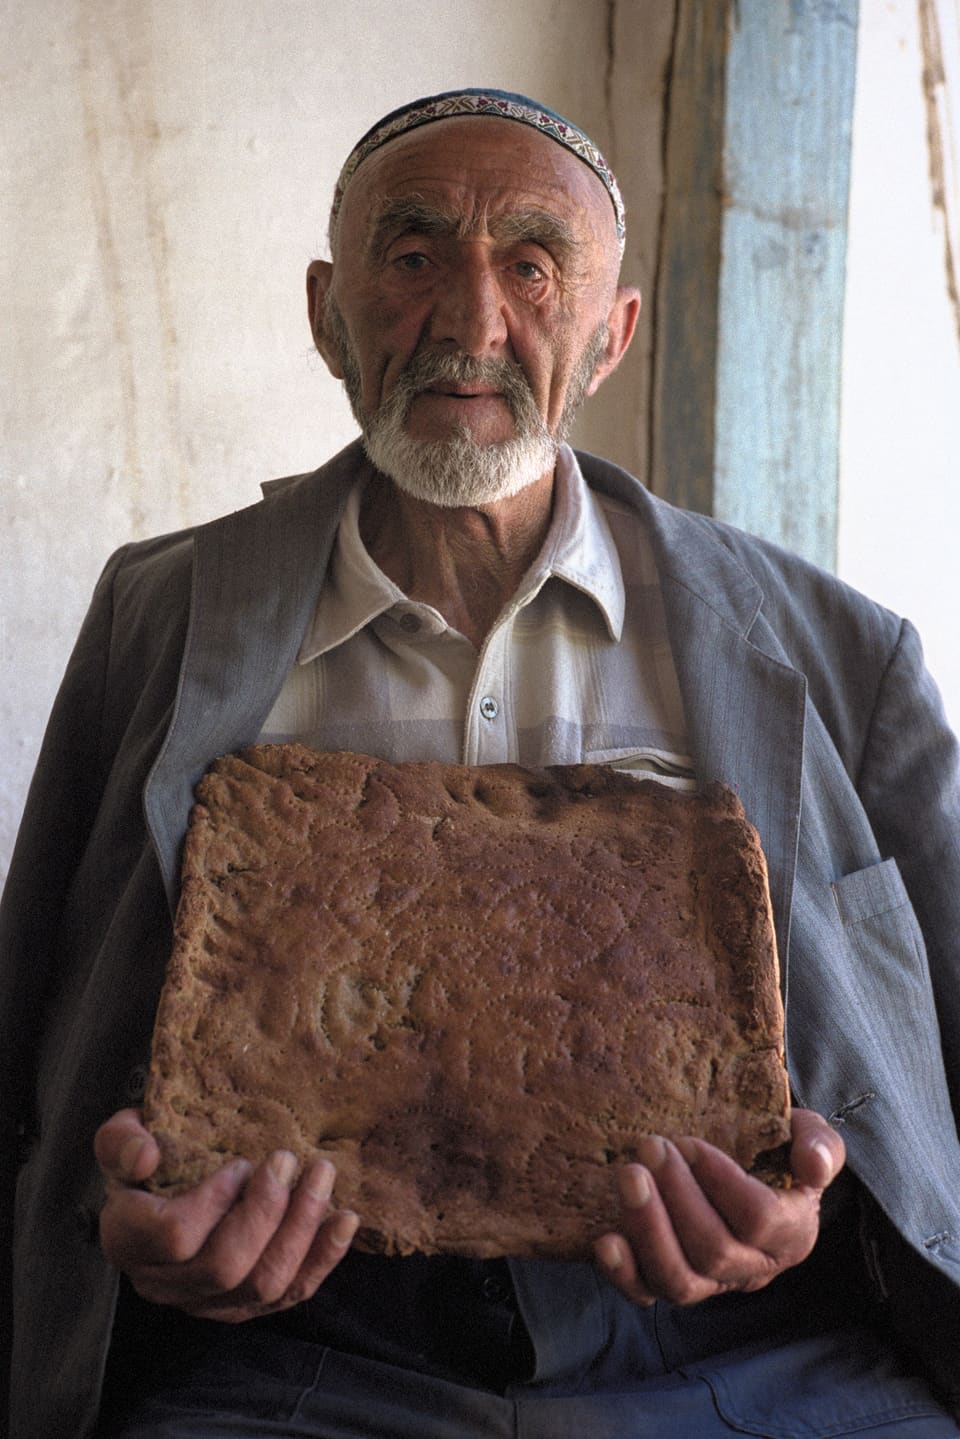 Ein älterer Mann hält einen grossen Brotlaib, der mit Mustern verziert ist.